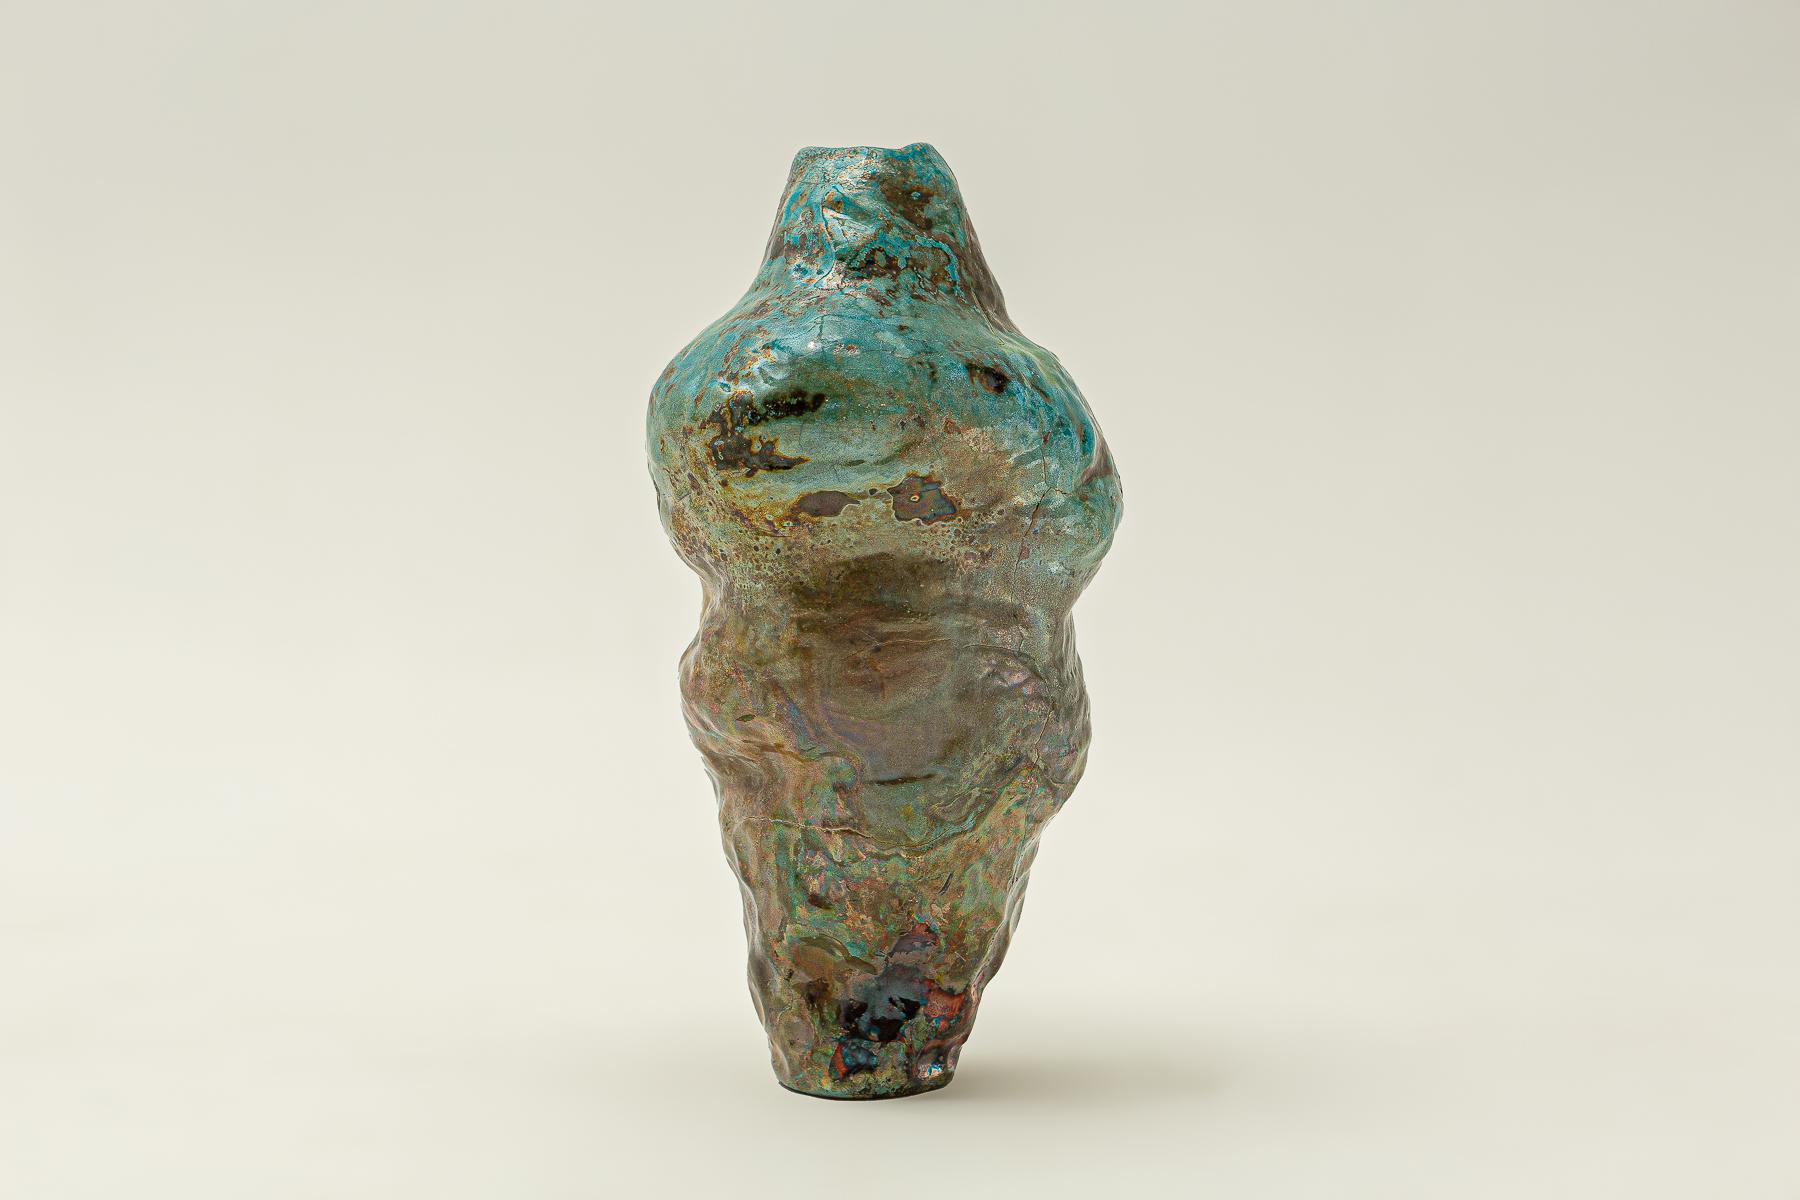 Handgeformte, im Raku gebrannte Vase aus Steinzeug. 
Nur getrocknete Blumen. Raku-Geschirr ist nur für dekorative Zwecke gedacht und hält kein Wasser.
Signatur des Künstlers auf dem Boden der Vase